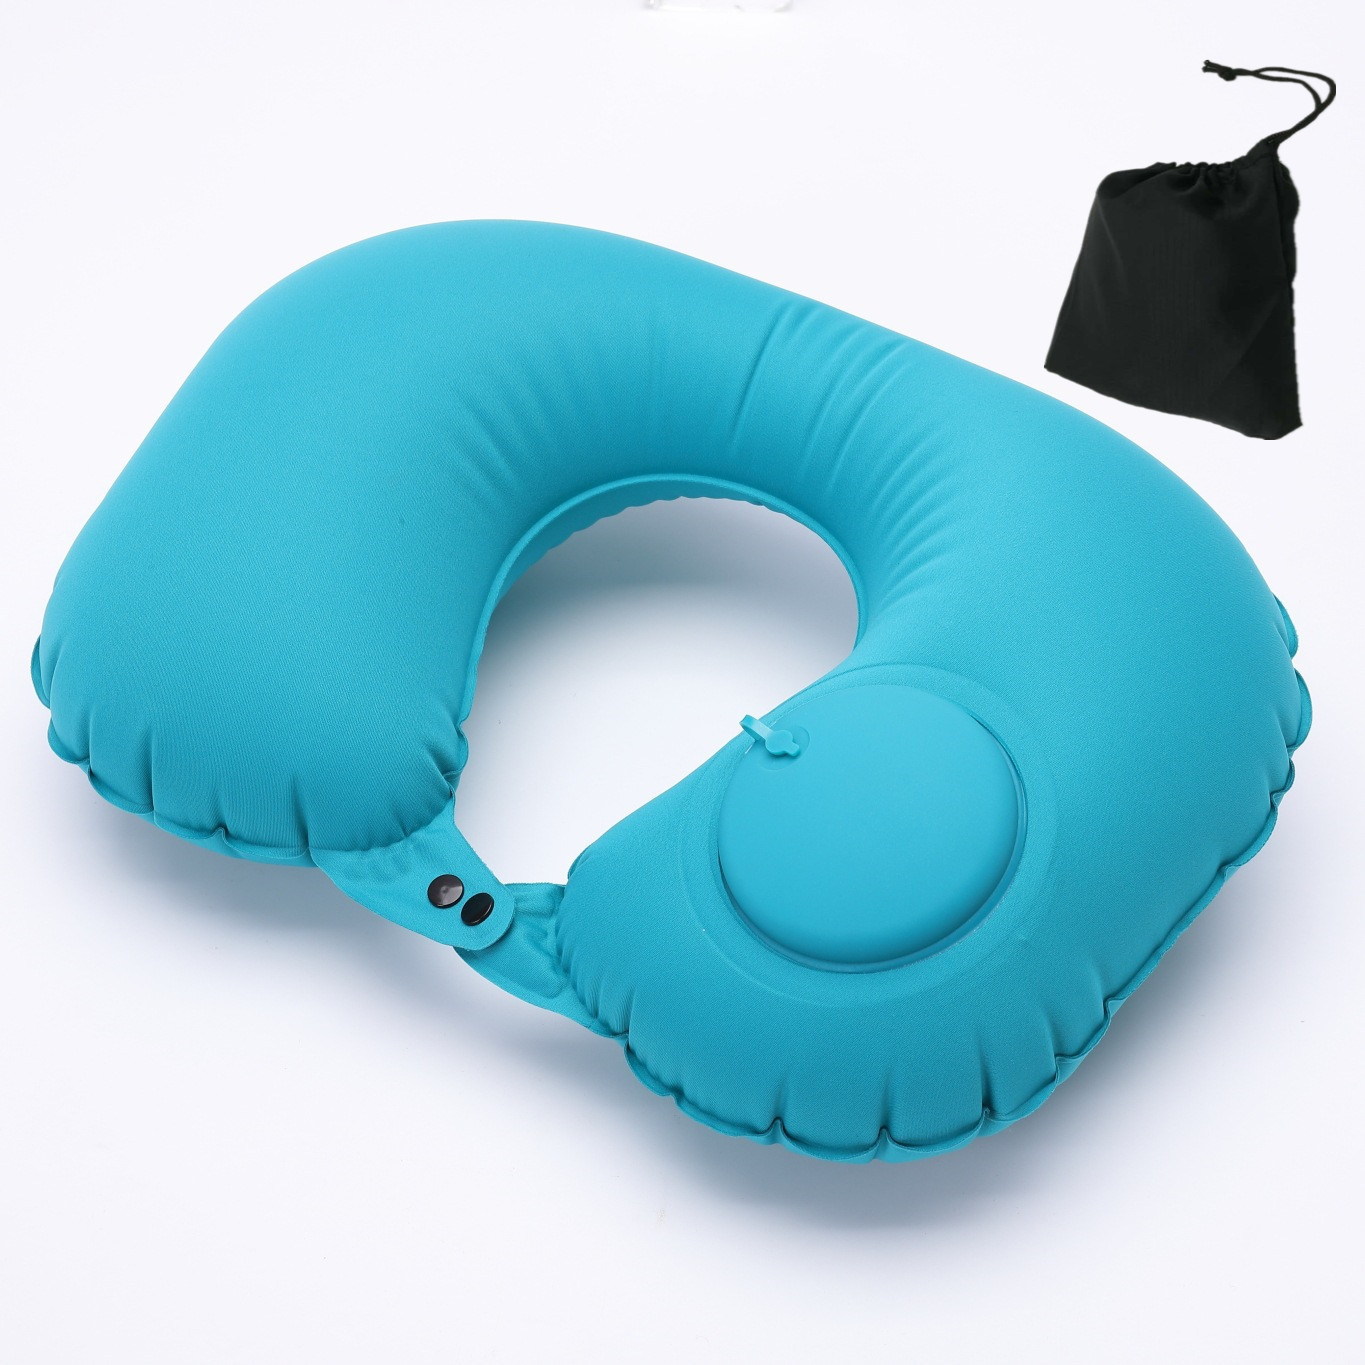 充气枕U型枕按压式充气枕5充气枕头源头厂家现货直销旅行枕u形枕